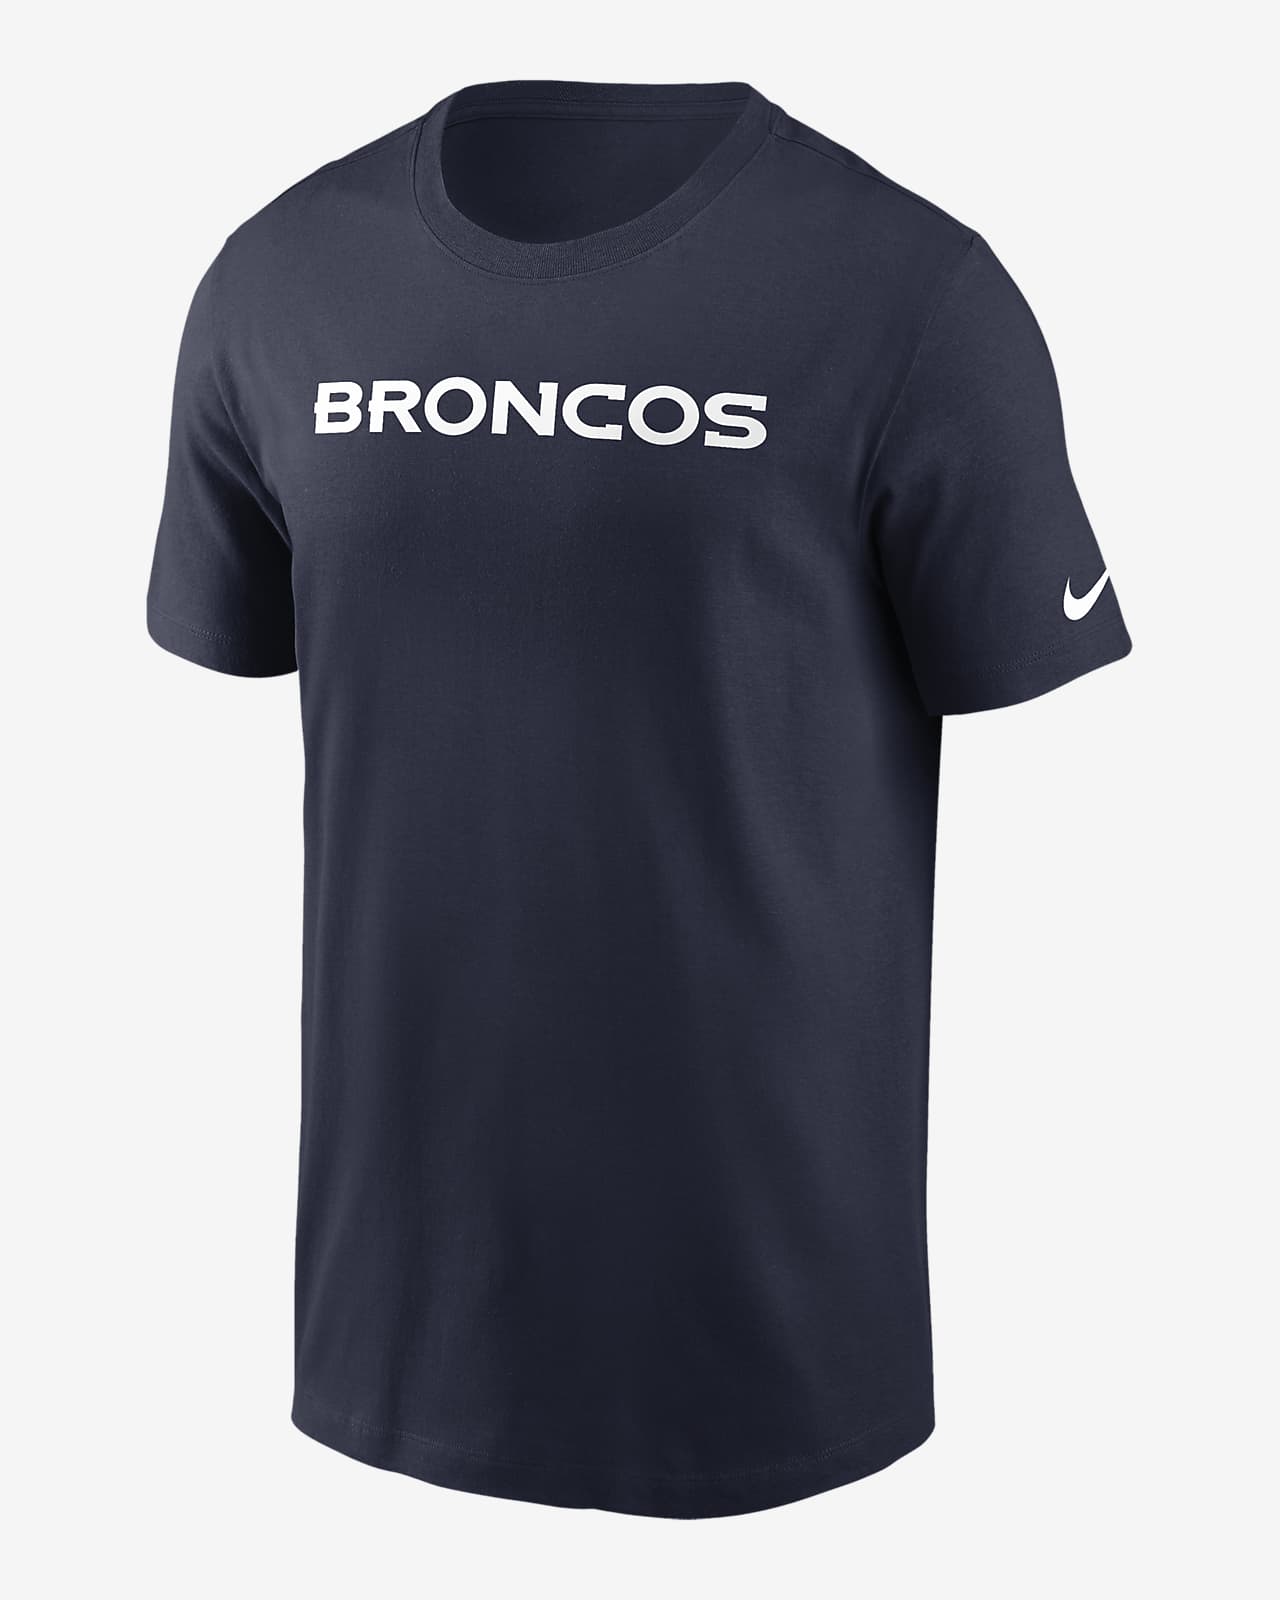 Denver Broncos Primetime Wordmark Essential Men's Nike NFL T-Shirt